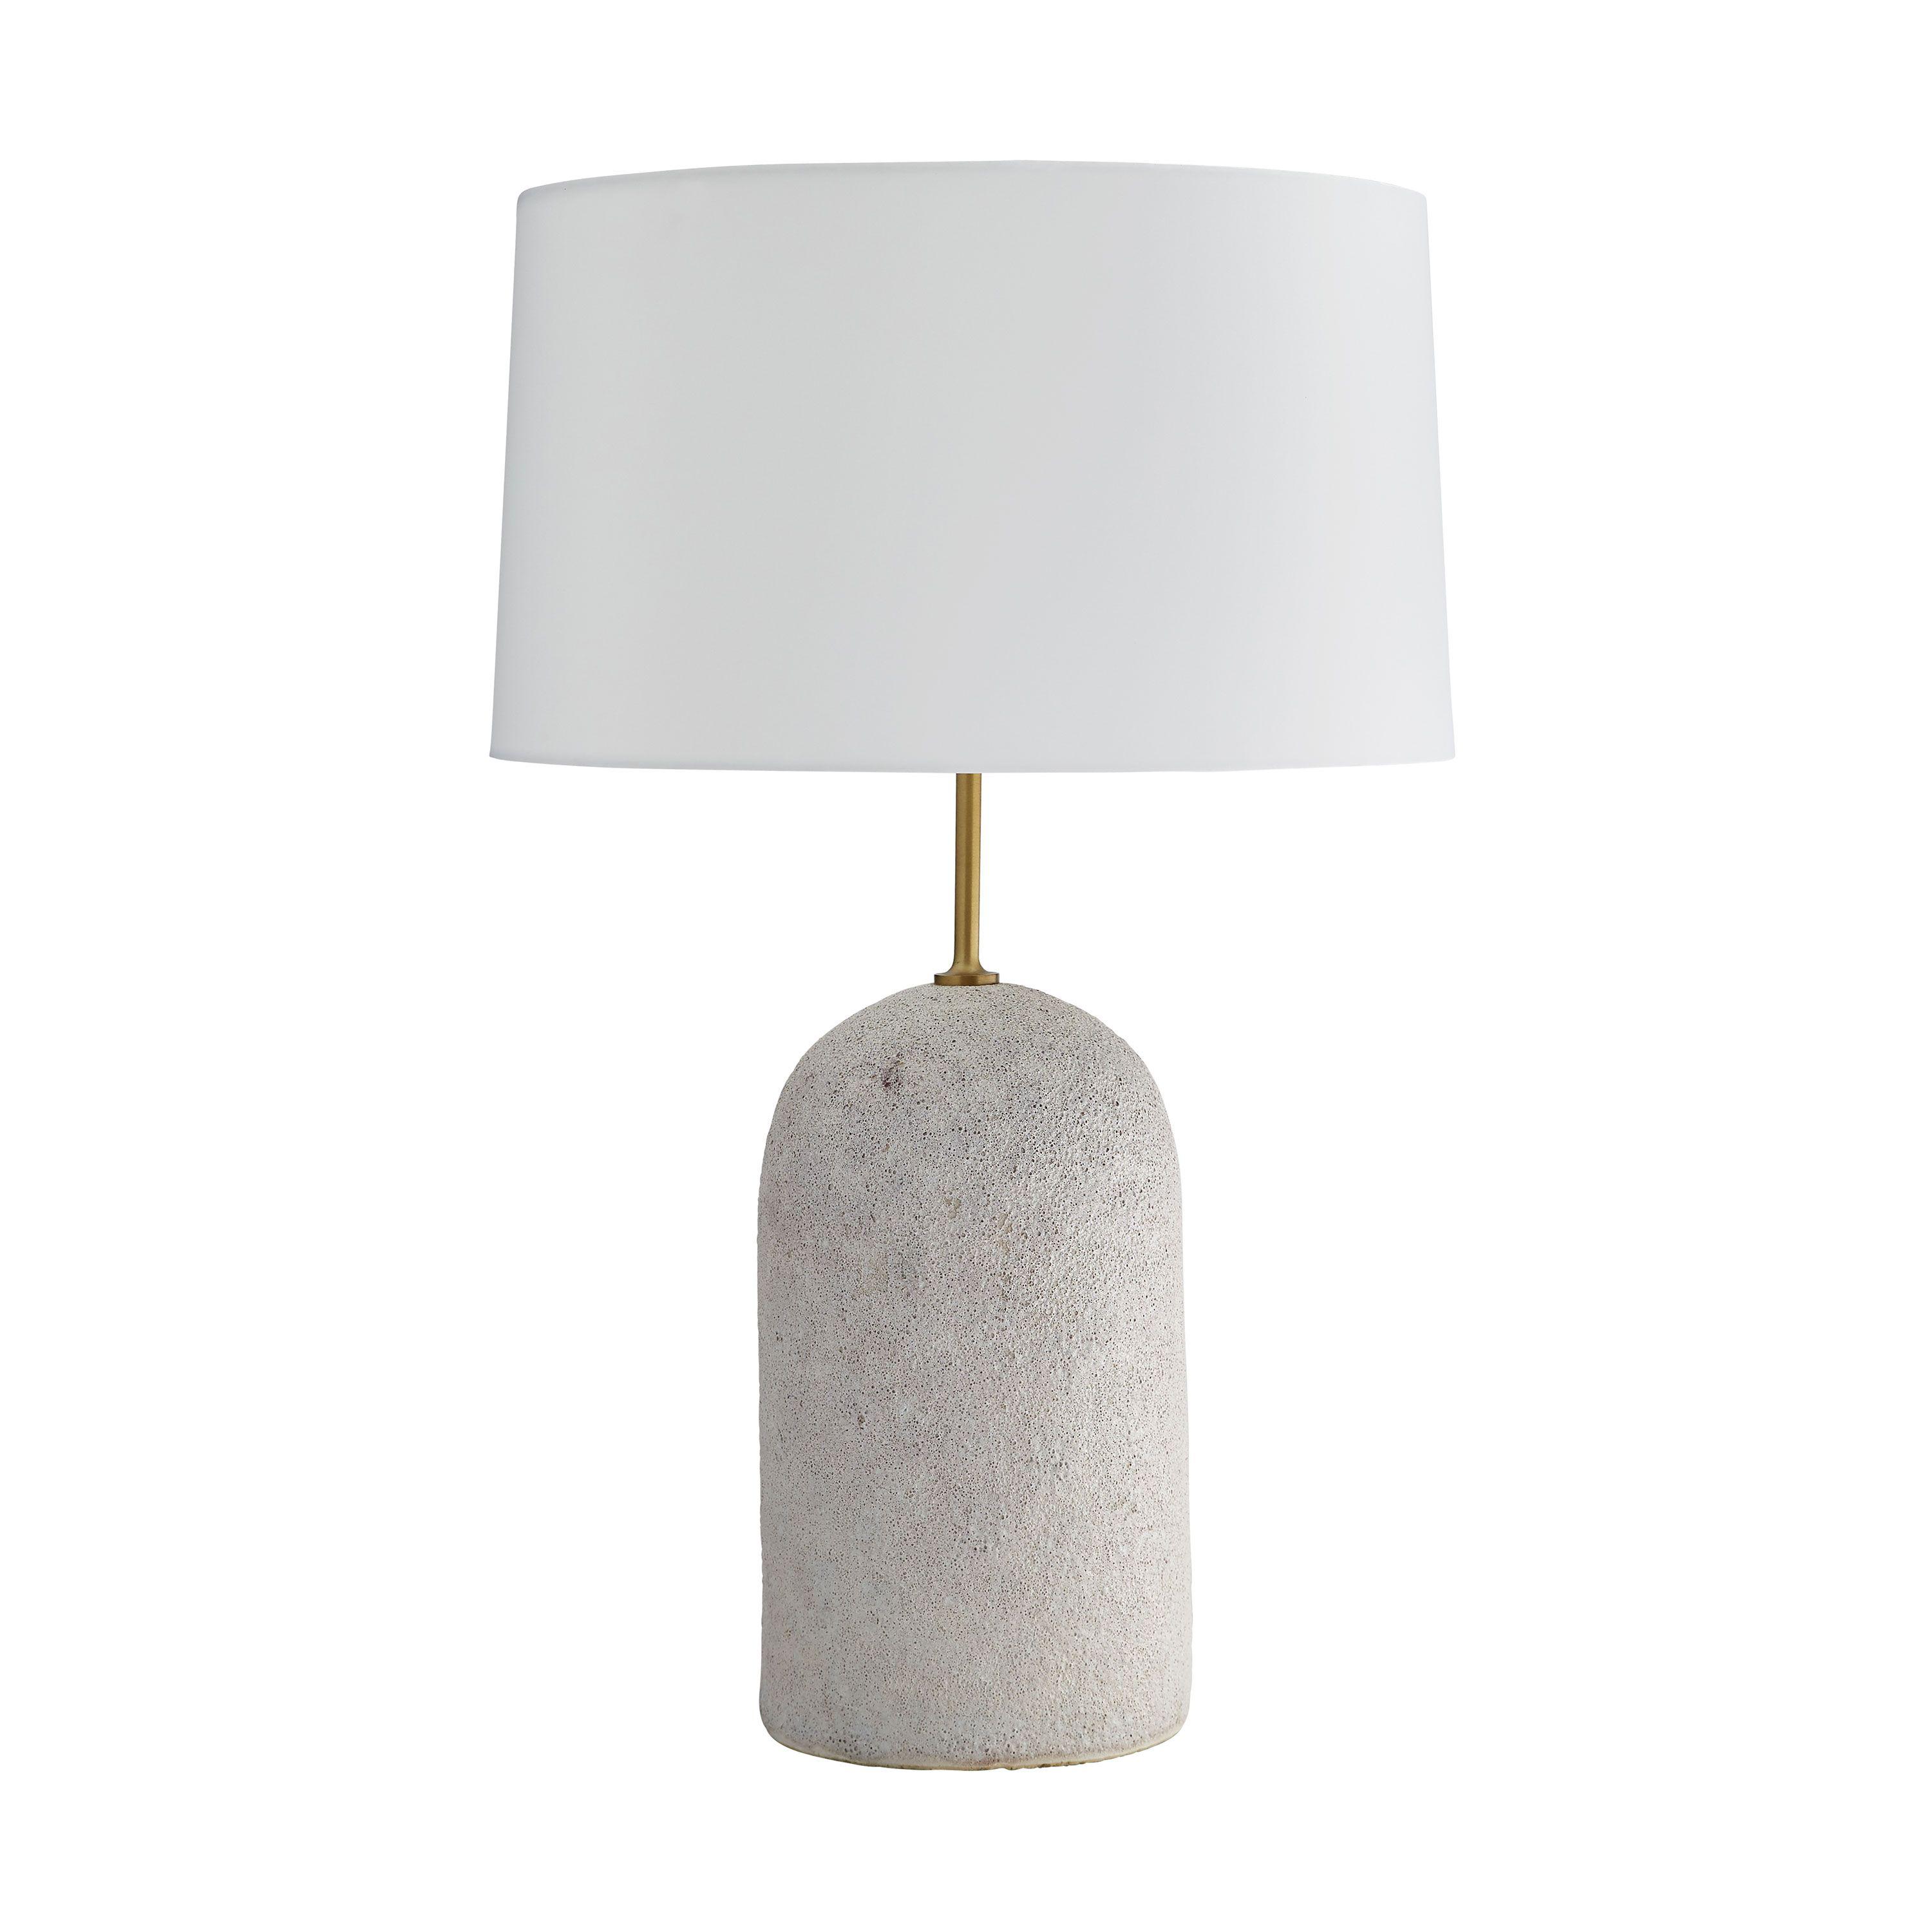 Купить Настольная лампа Capelli Lamp в интернет-магазине roooms.ru